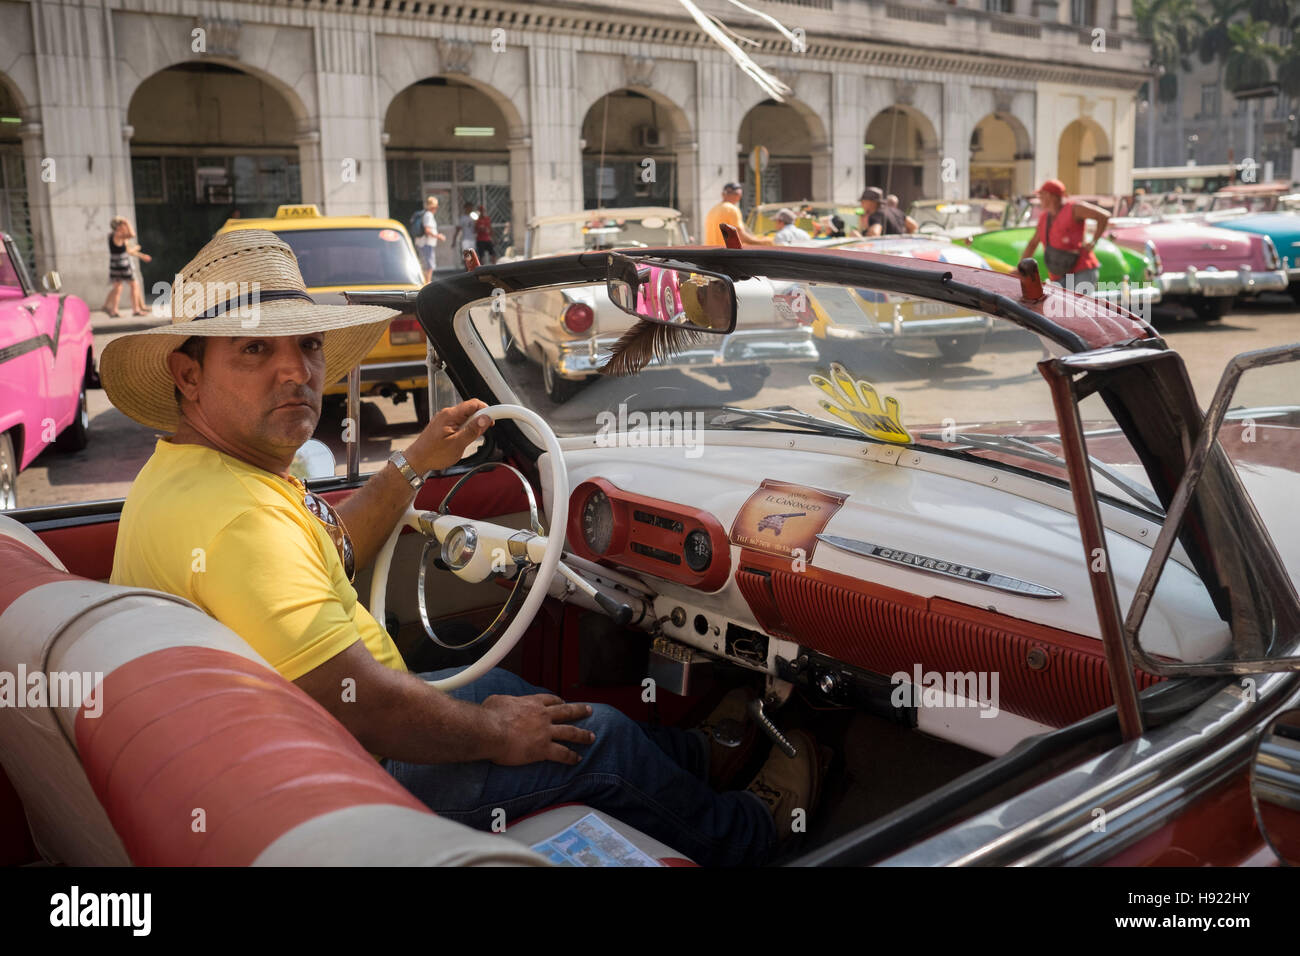 L'Avana, Cuba: Classic driver convertibile in Centro Habana street Foto Stock